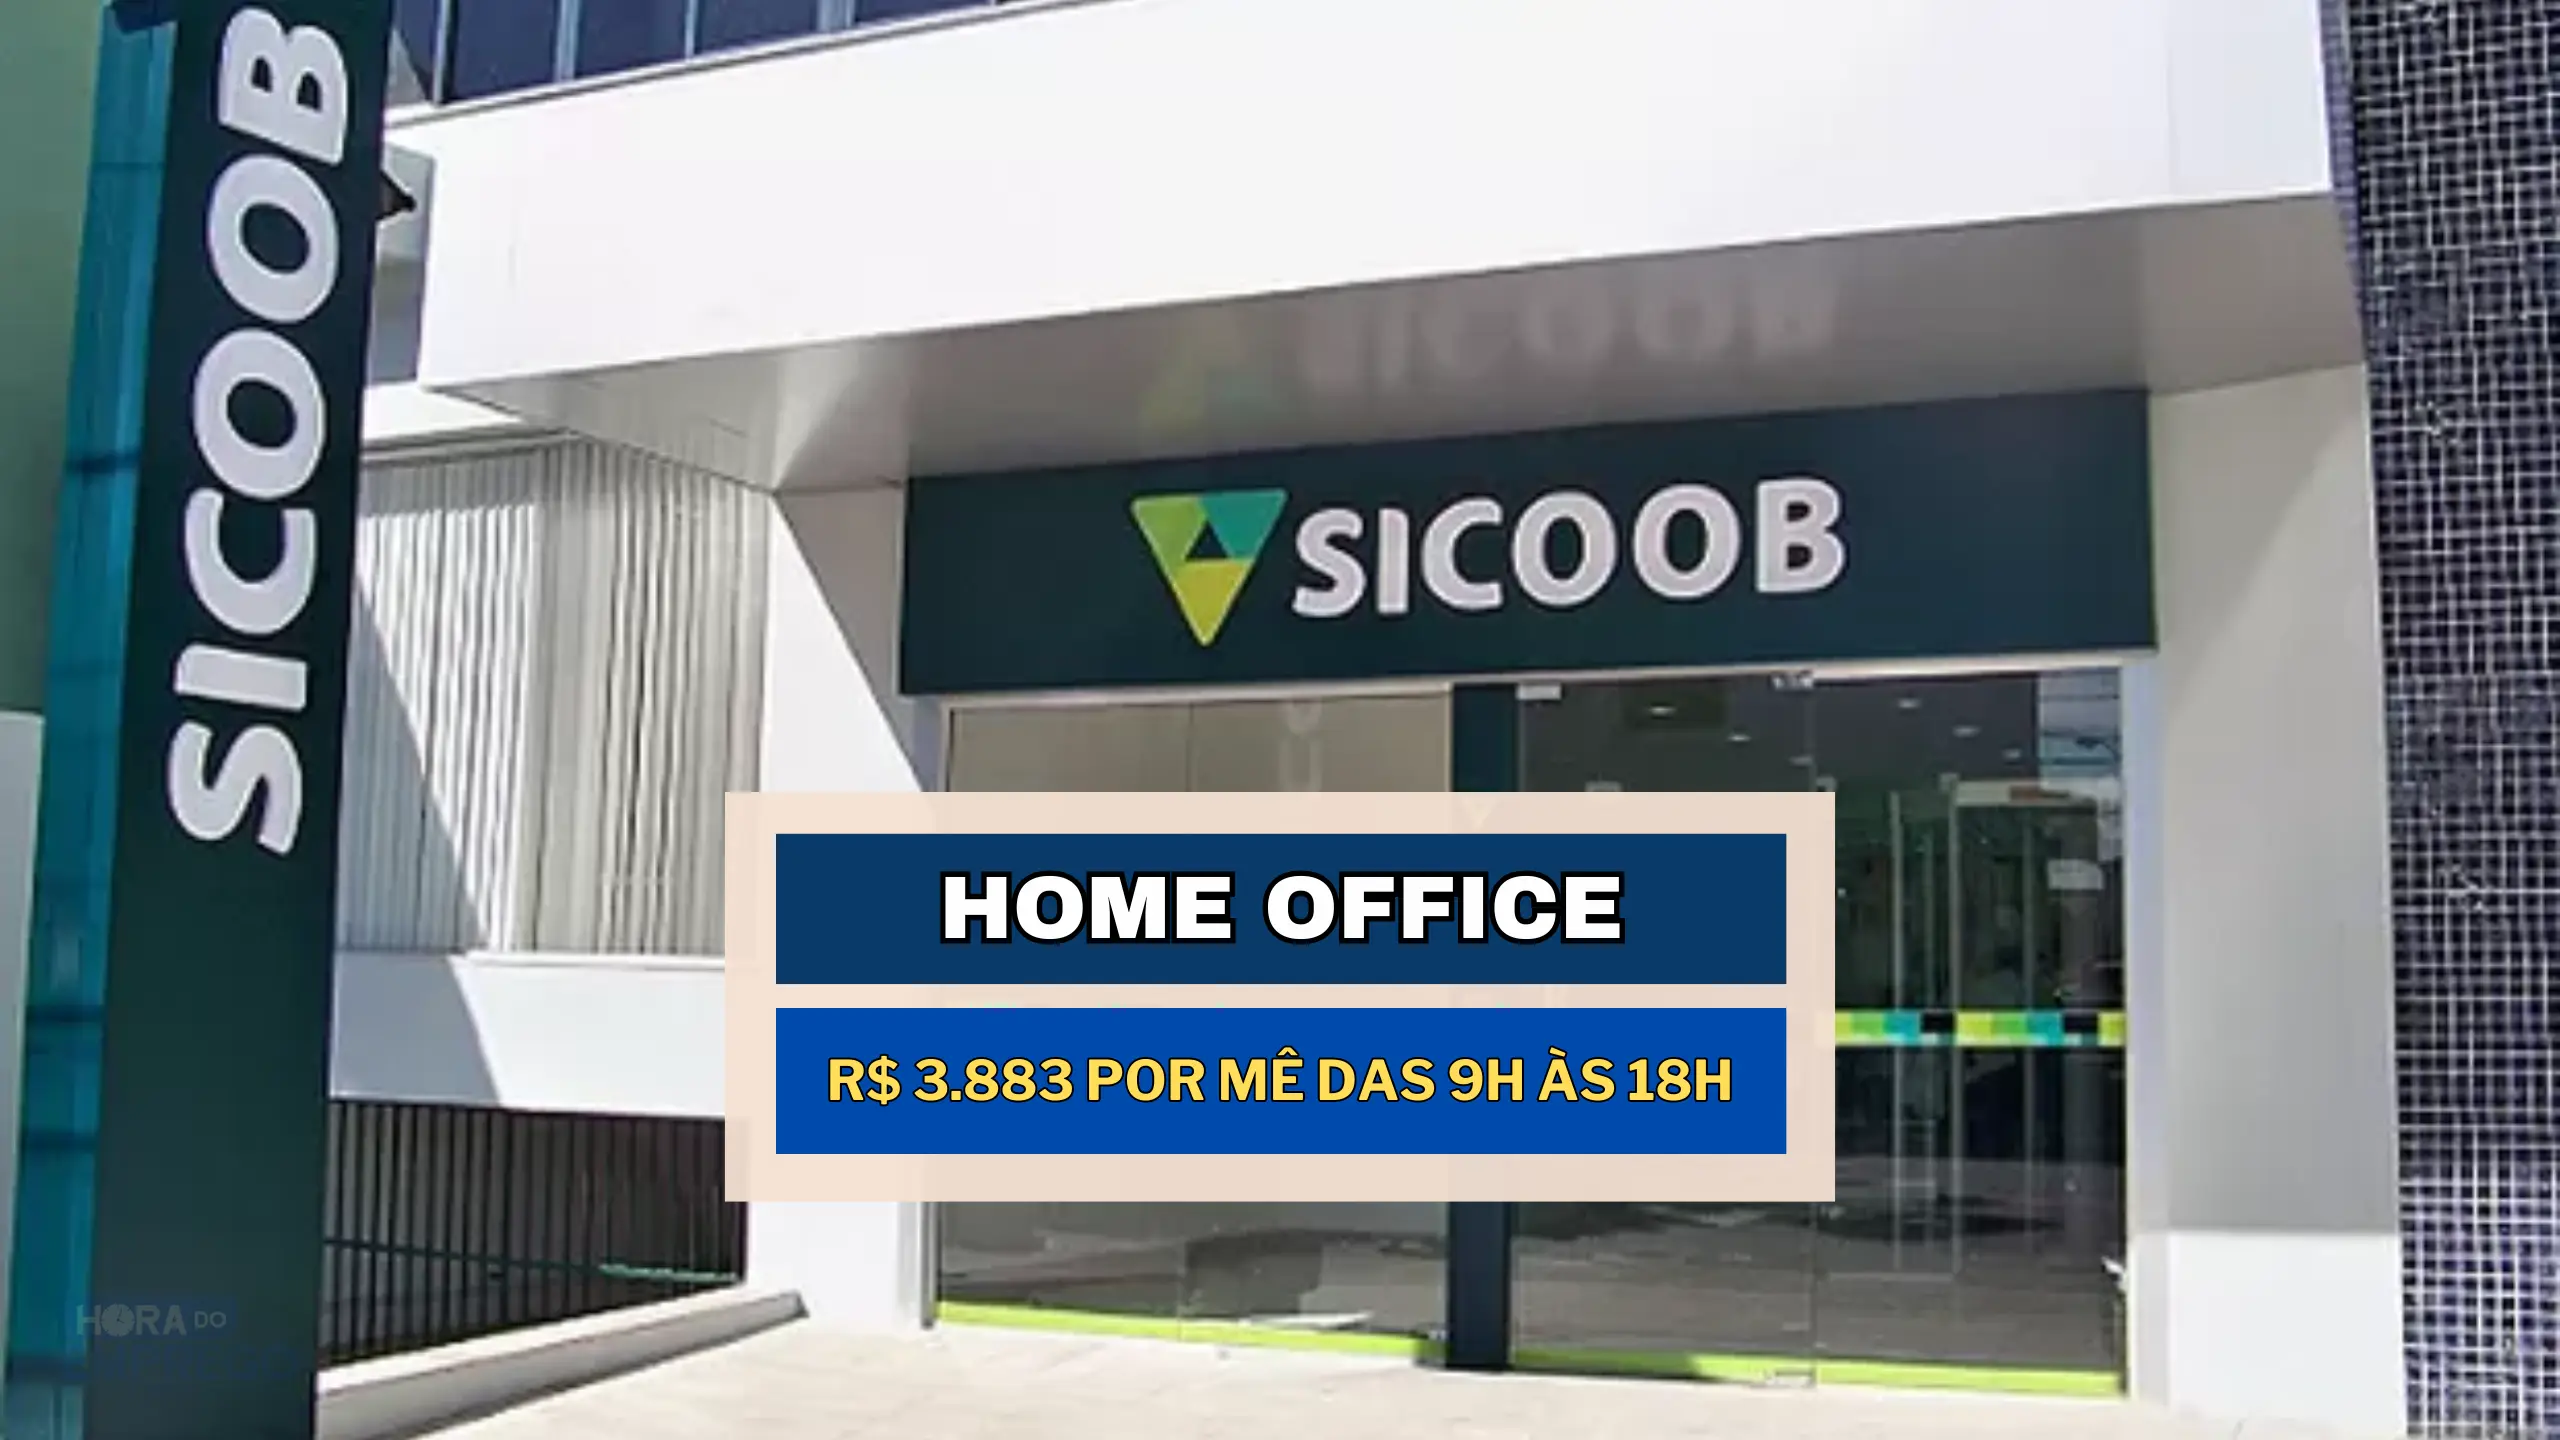 Banco Sicoob anuncia vaga HOME OFFICE com salário de até R$ 3.883 por mê das 9h às 18h para Analista de Processos